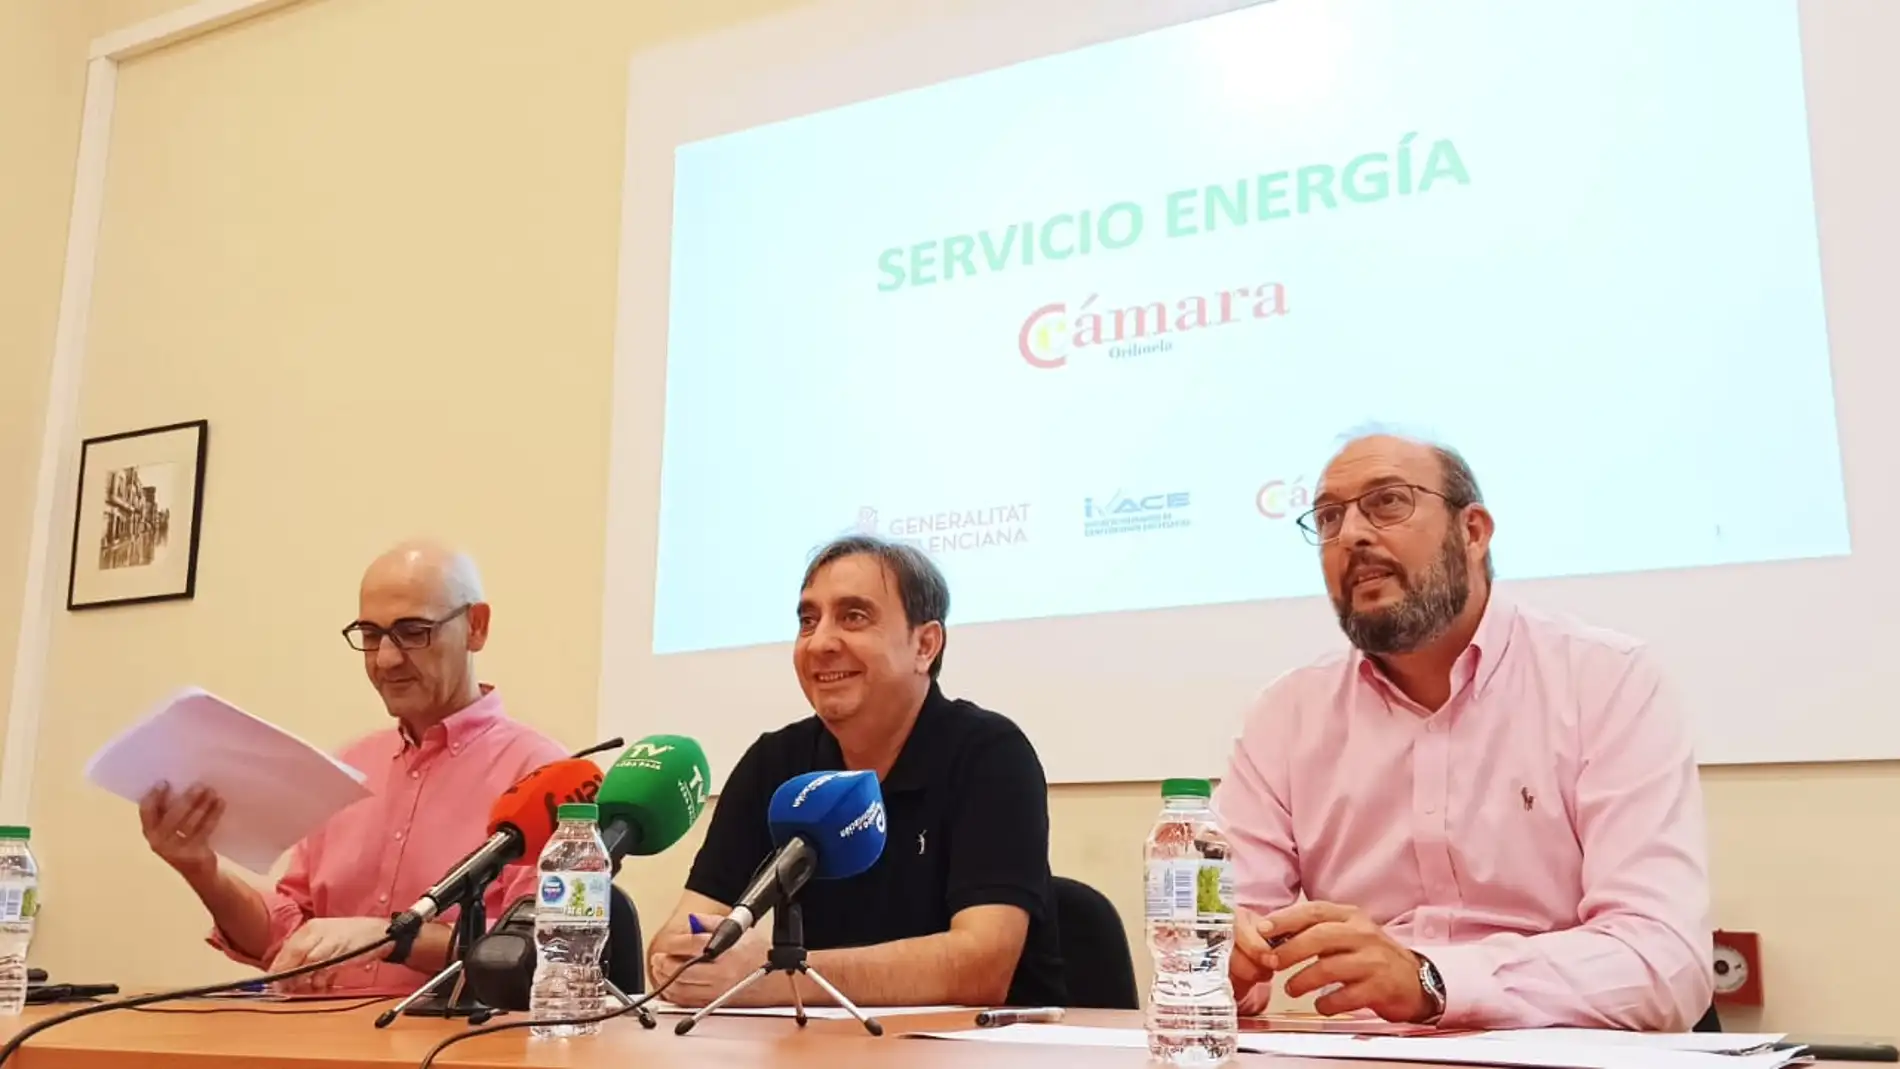 Cámara Orihuela ofrece un servicio específico para que las empresas consigan mejorar en eficiencia energética